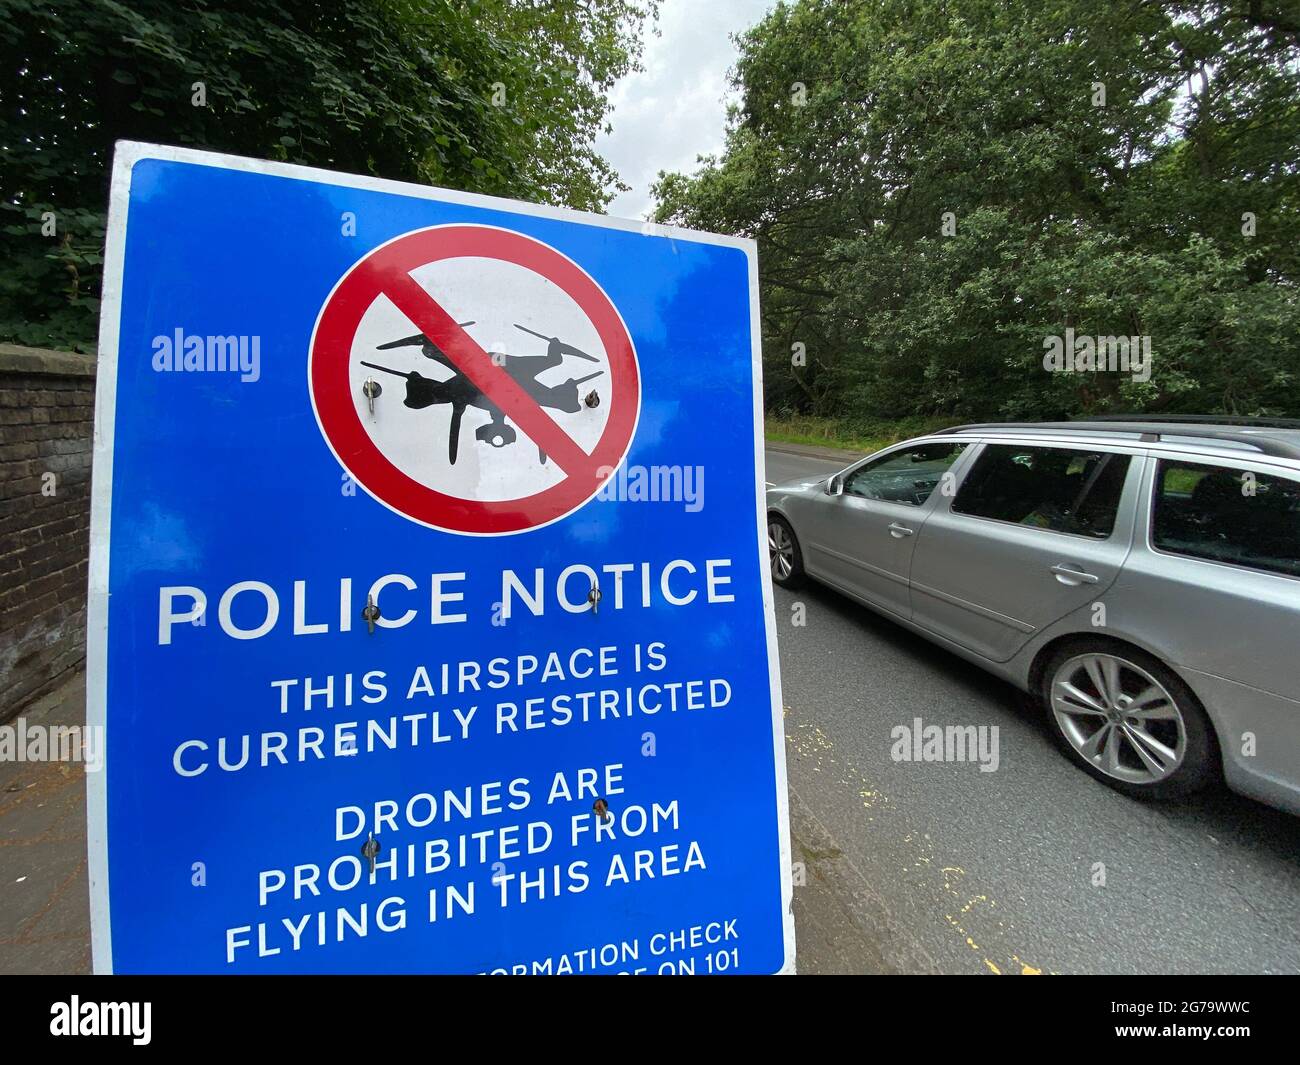 Un panneau de police près de Wimbledon, dans le sud-ouest de Londres, avertit les pilotes de drones que l'espace aérien est restreint et que l'envoi de drones est interdit. Date de la photo: Dimanche 11 juillet 2021. Banque D'Images